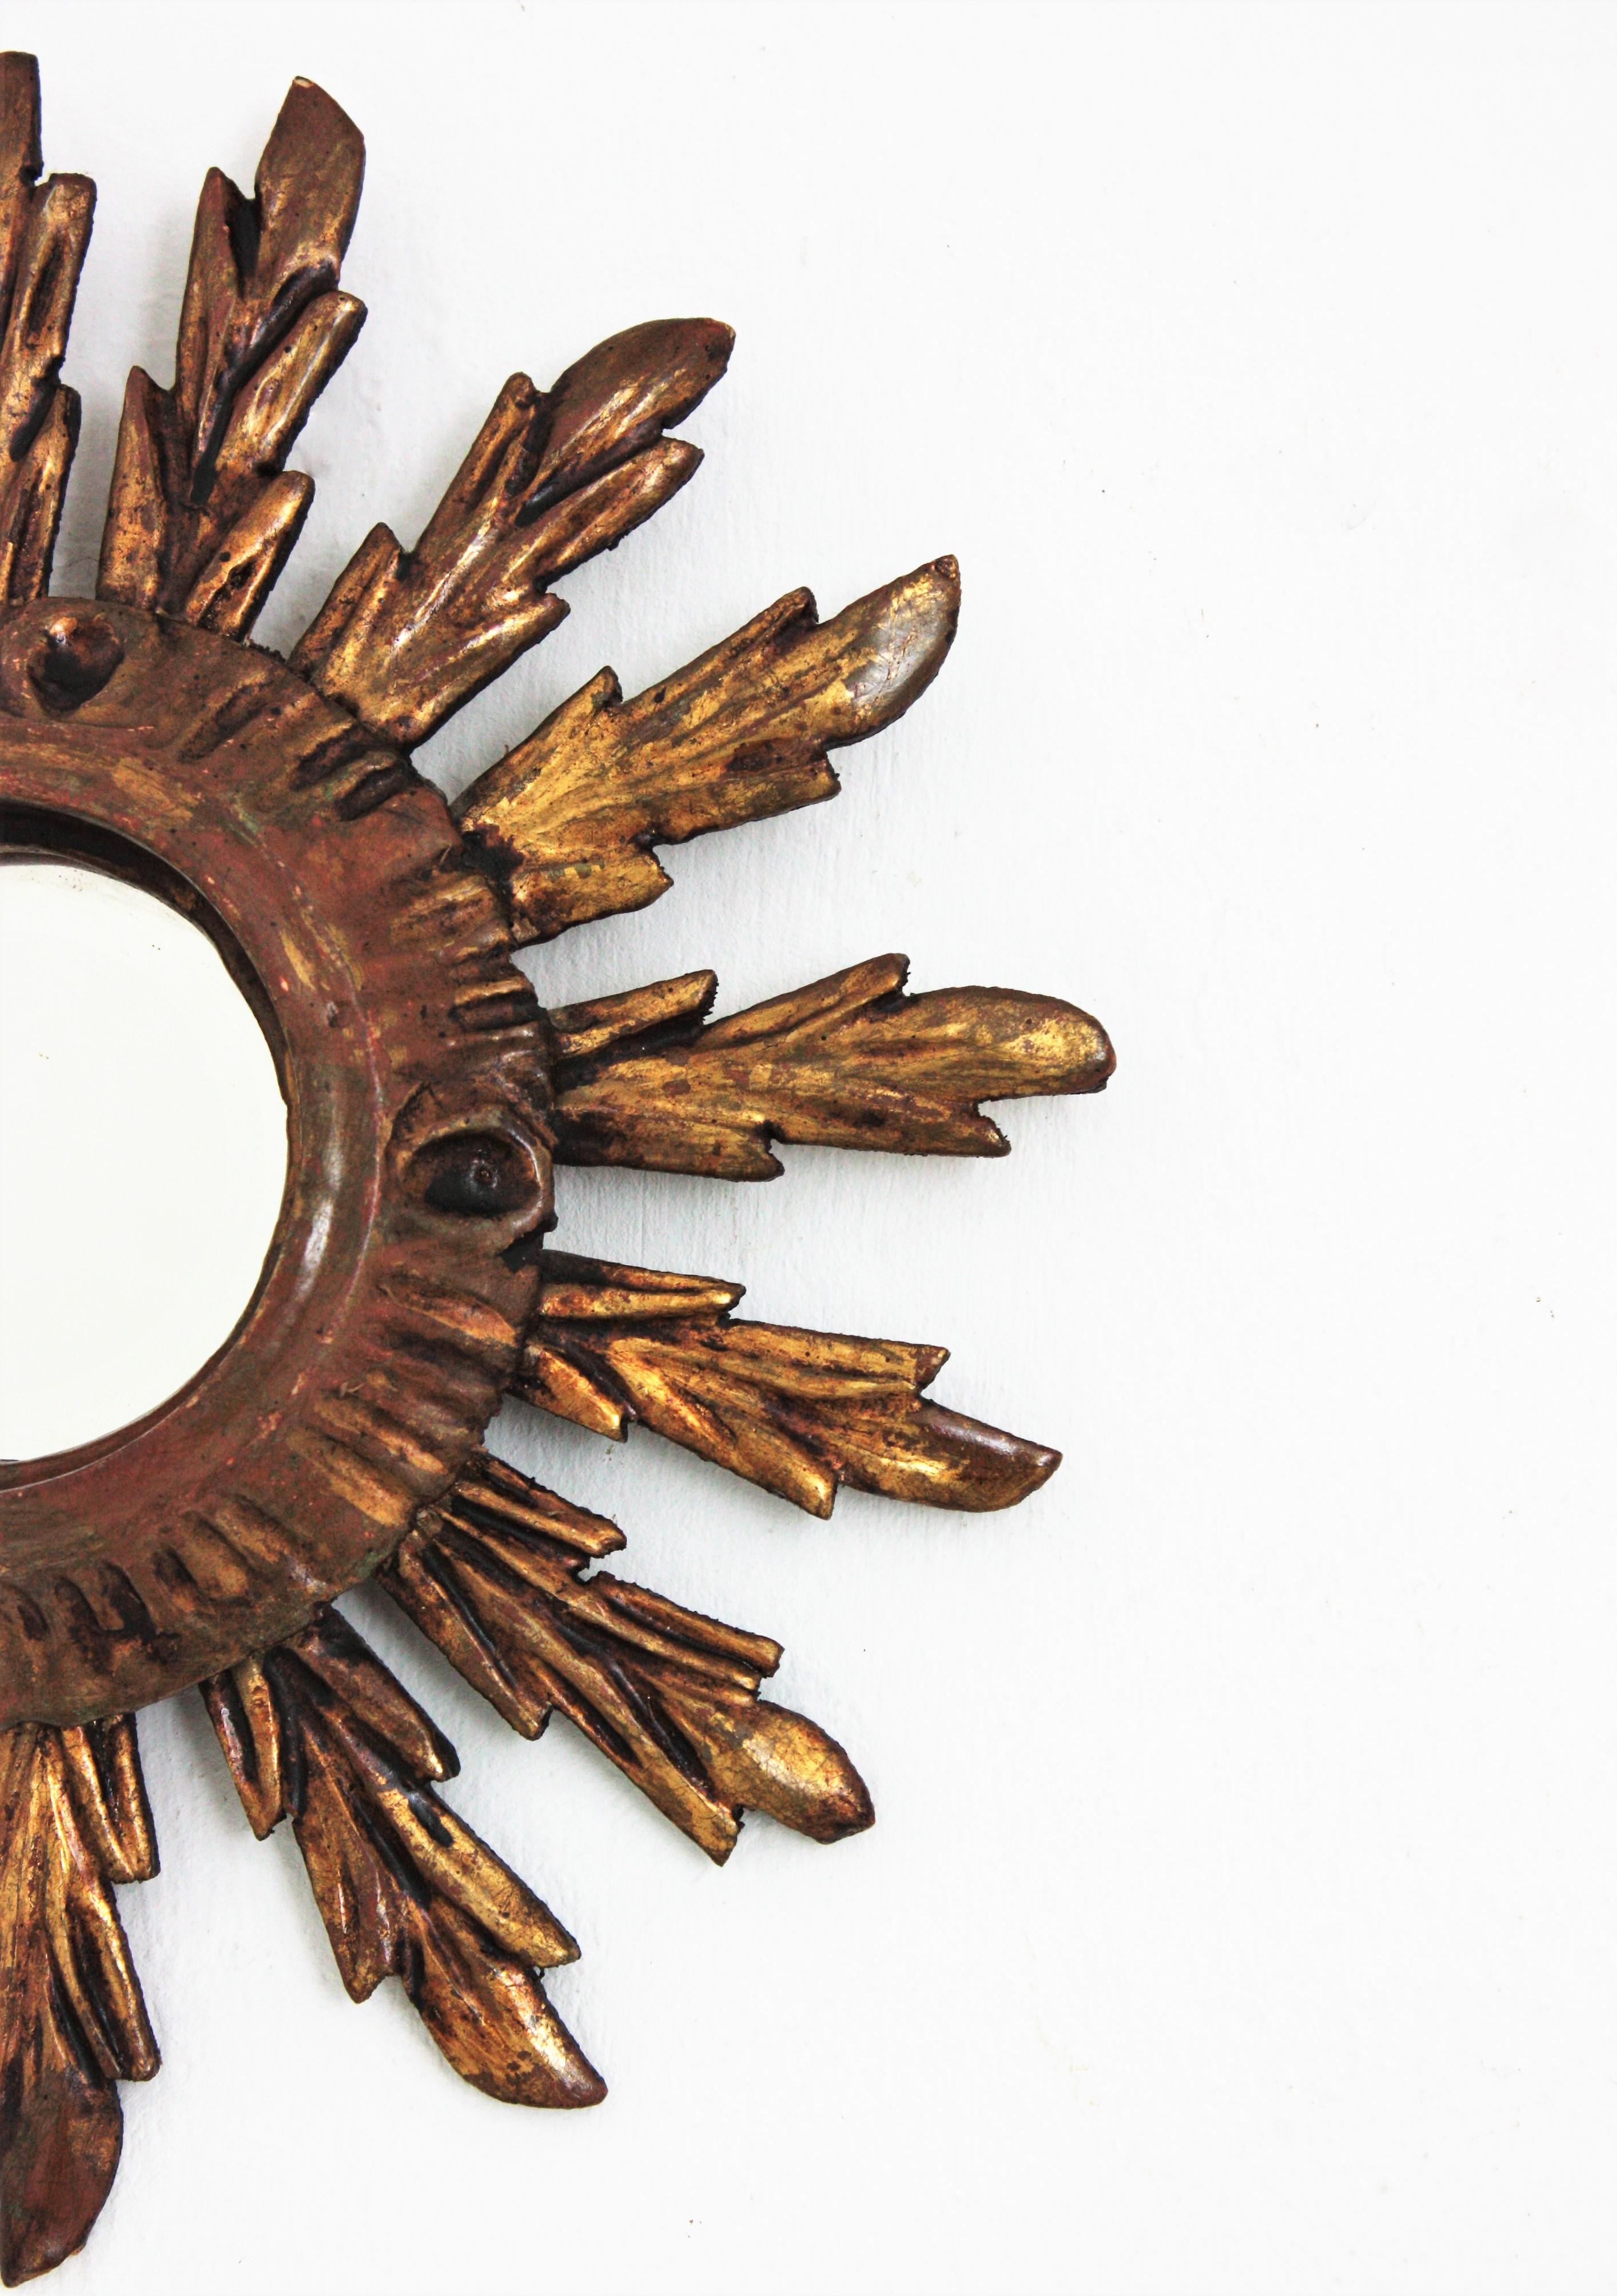 20th Century Sunburst Mirror in Small Scale, Baroque Style